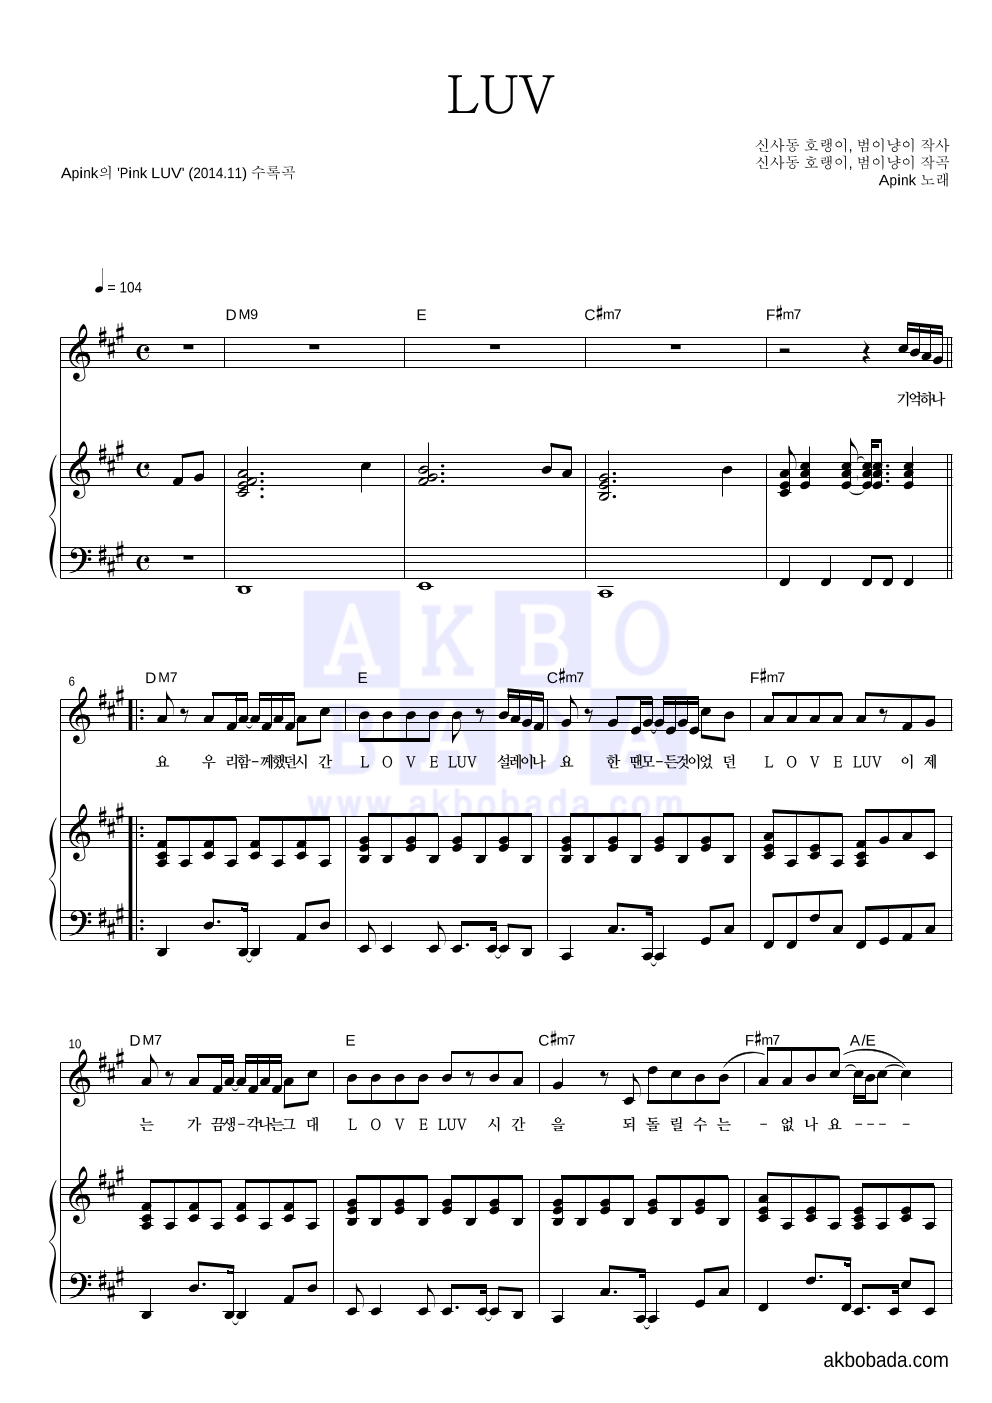 에이핑크 - LUV 피아노 3단 악보 